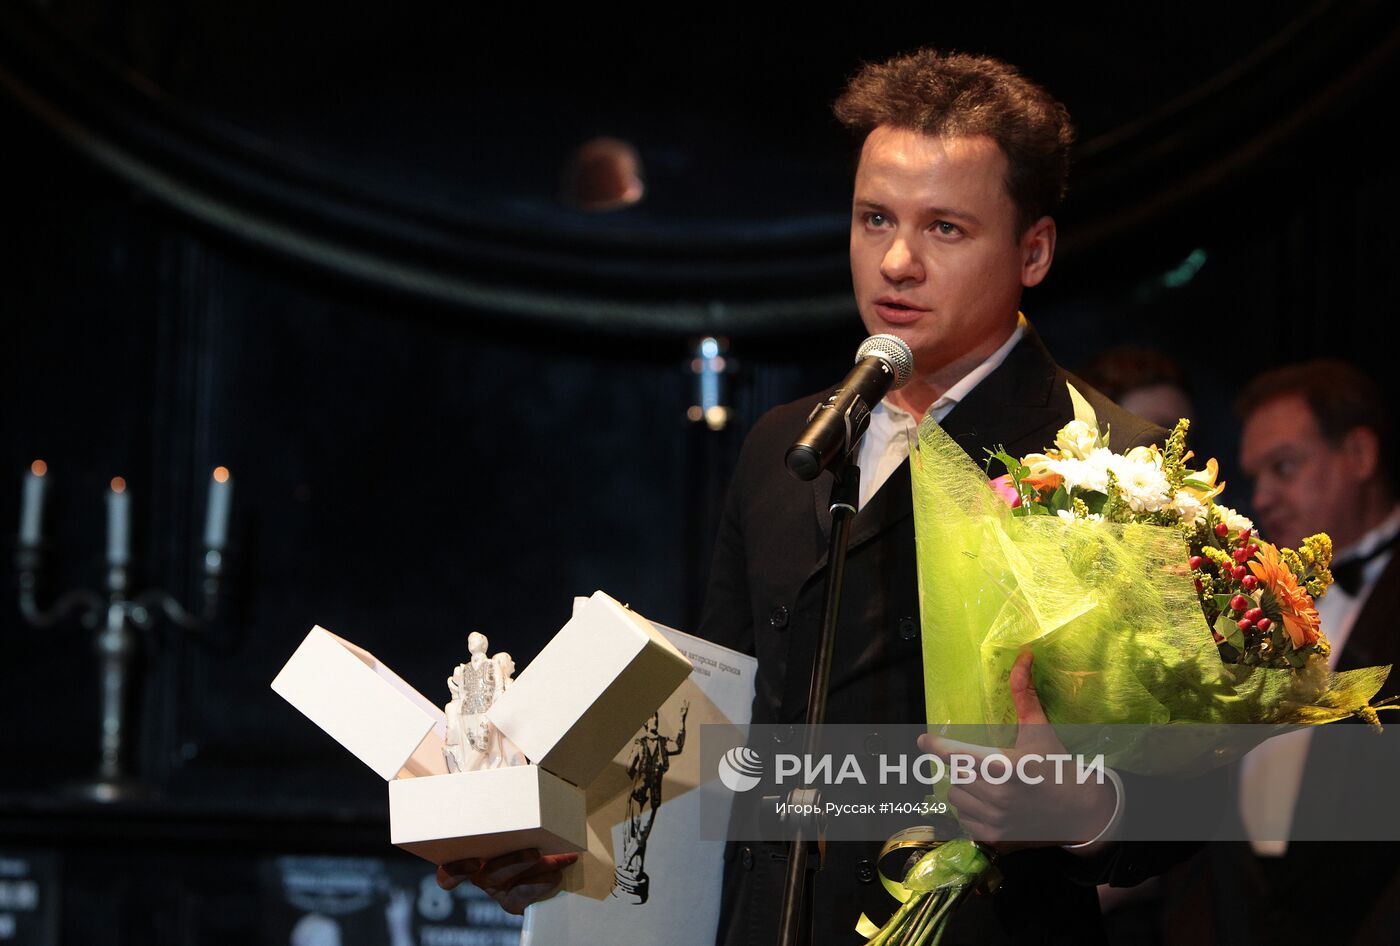 Вручение актерской премии "Фигаро" имени Андрея Миронова